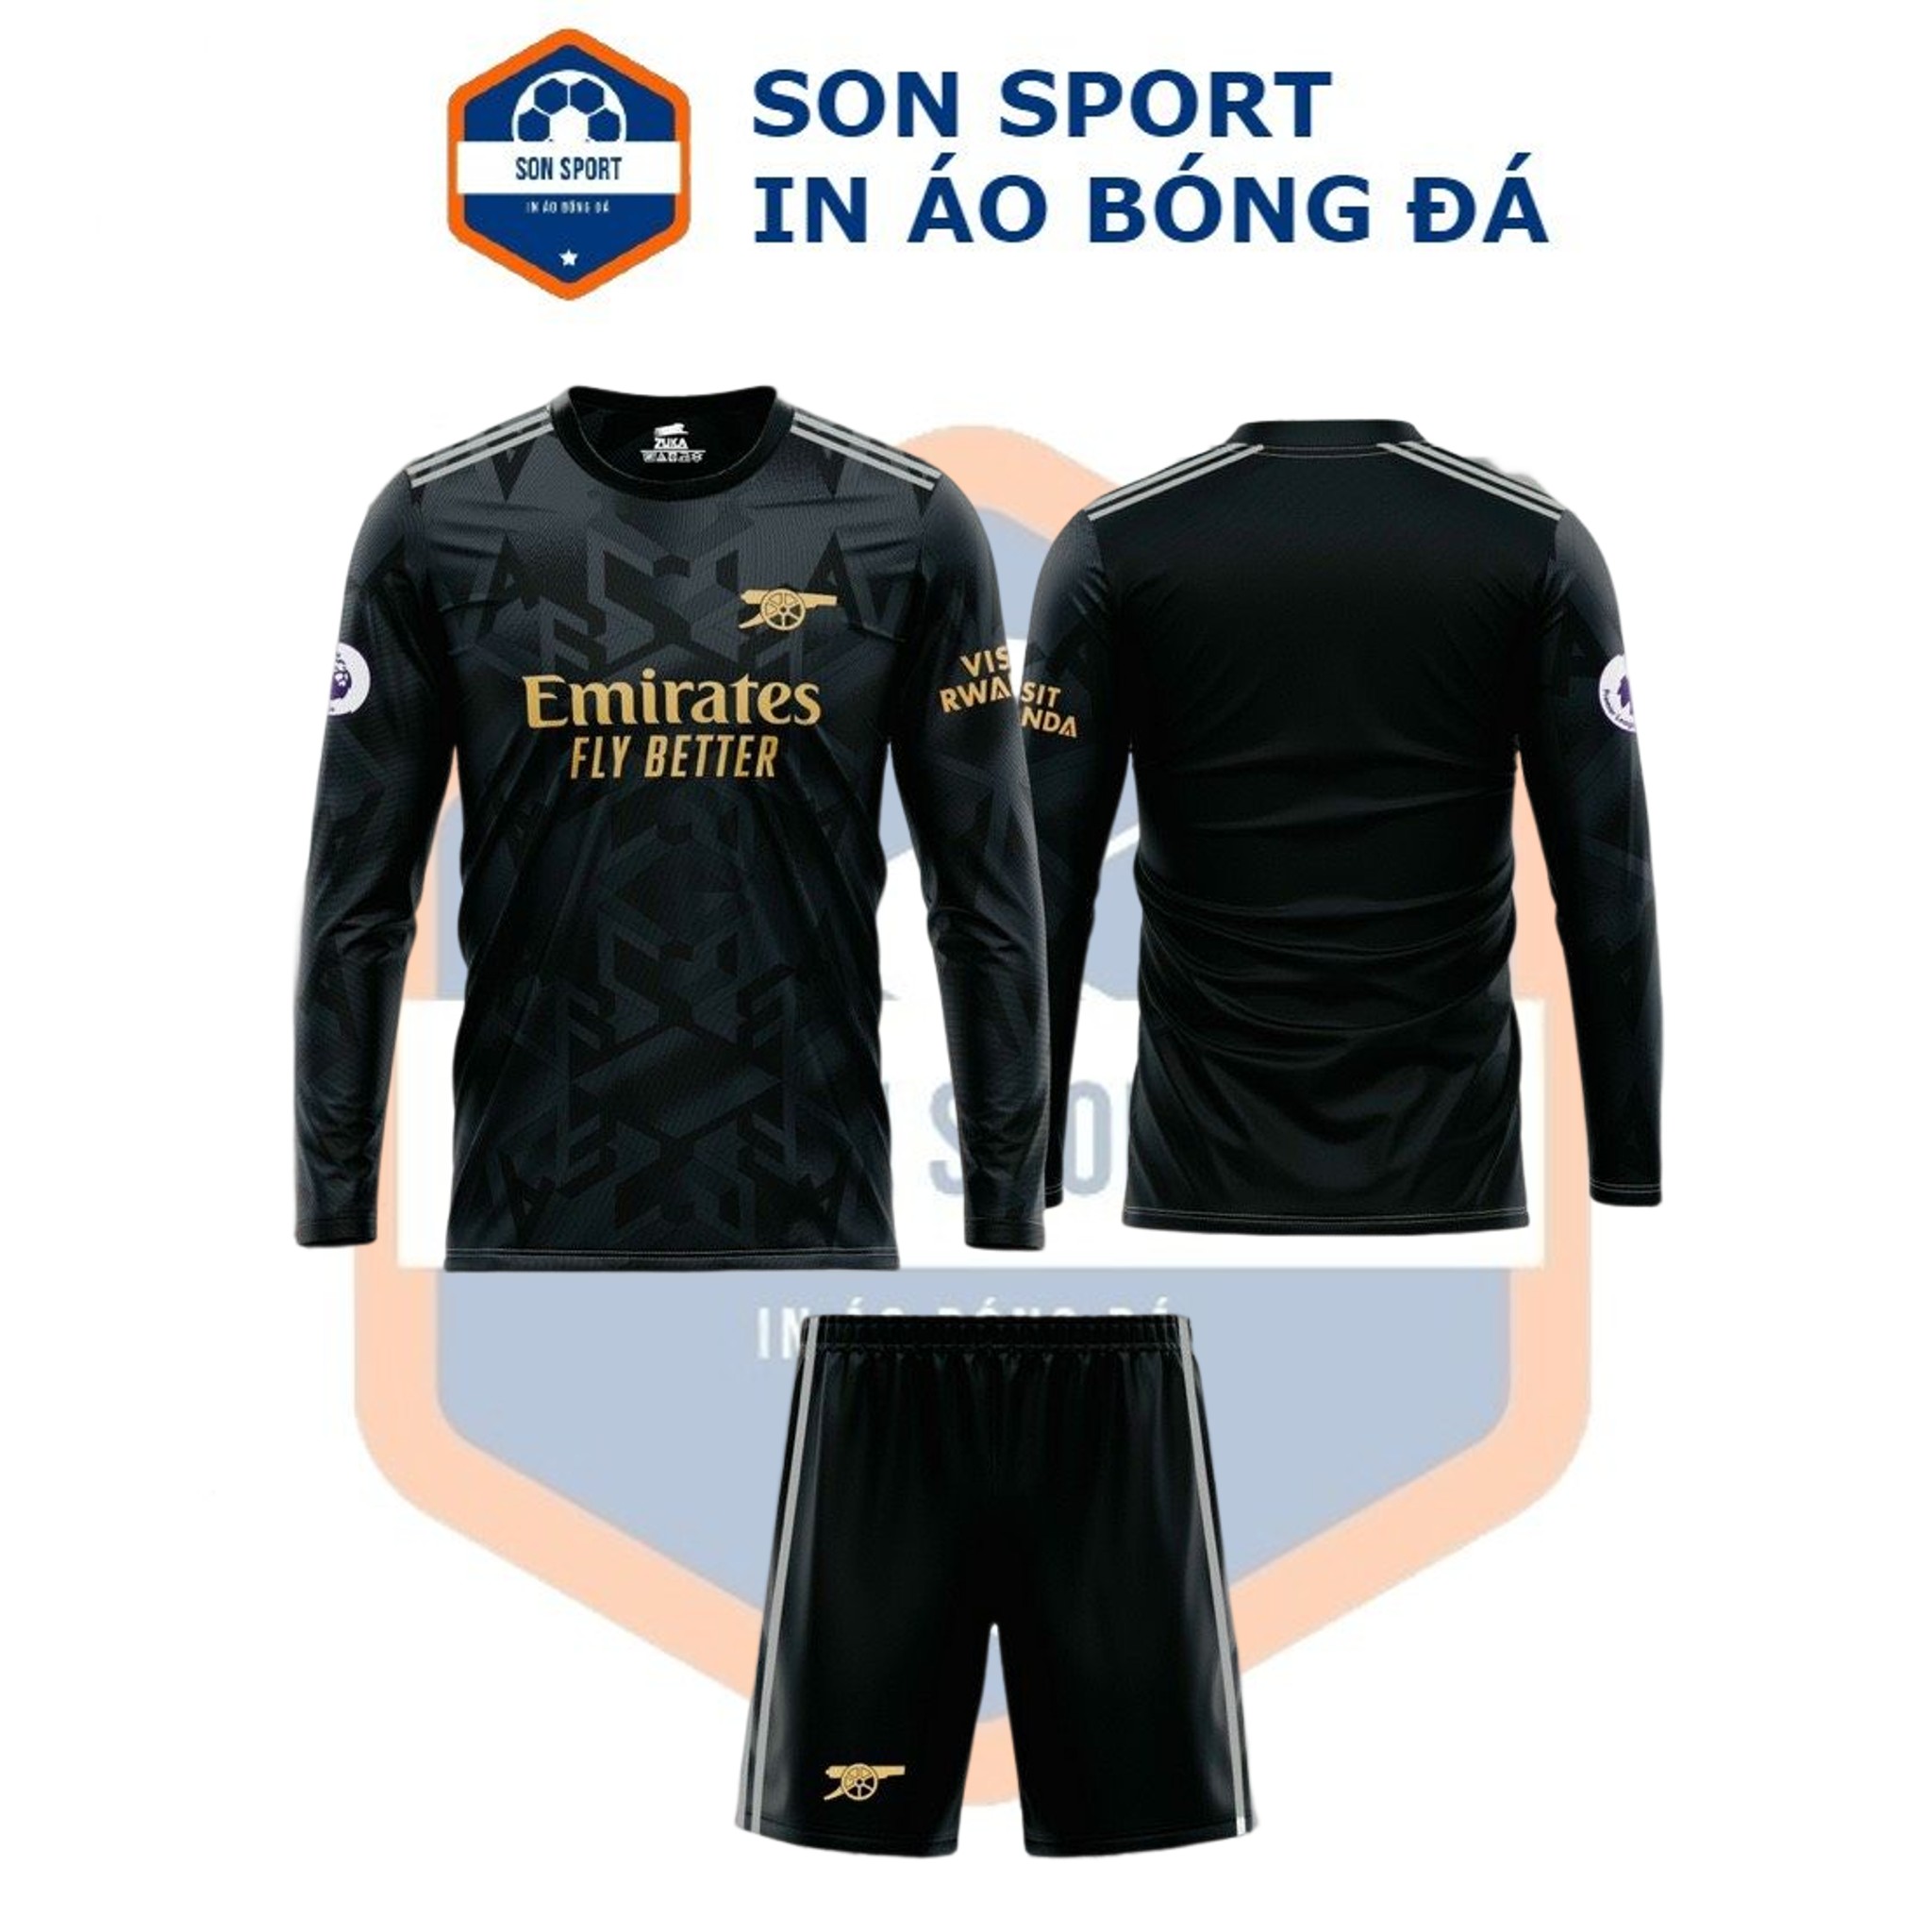 Bộ quần áo bóng đá Dài tay Thun thái CLB Arsenal đen xám